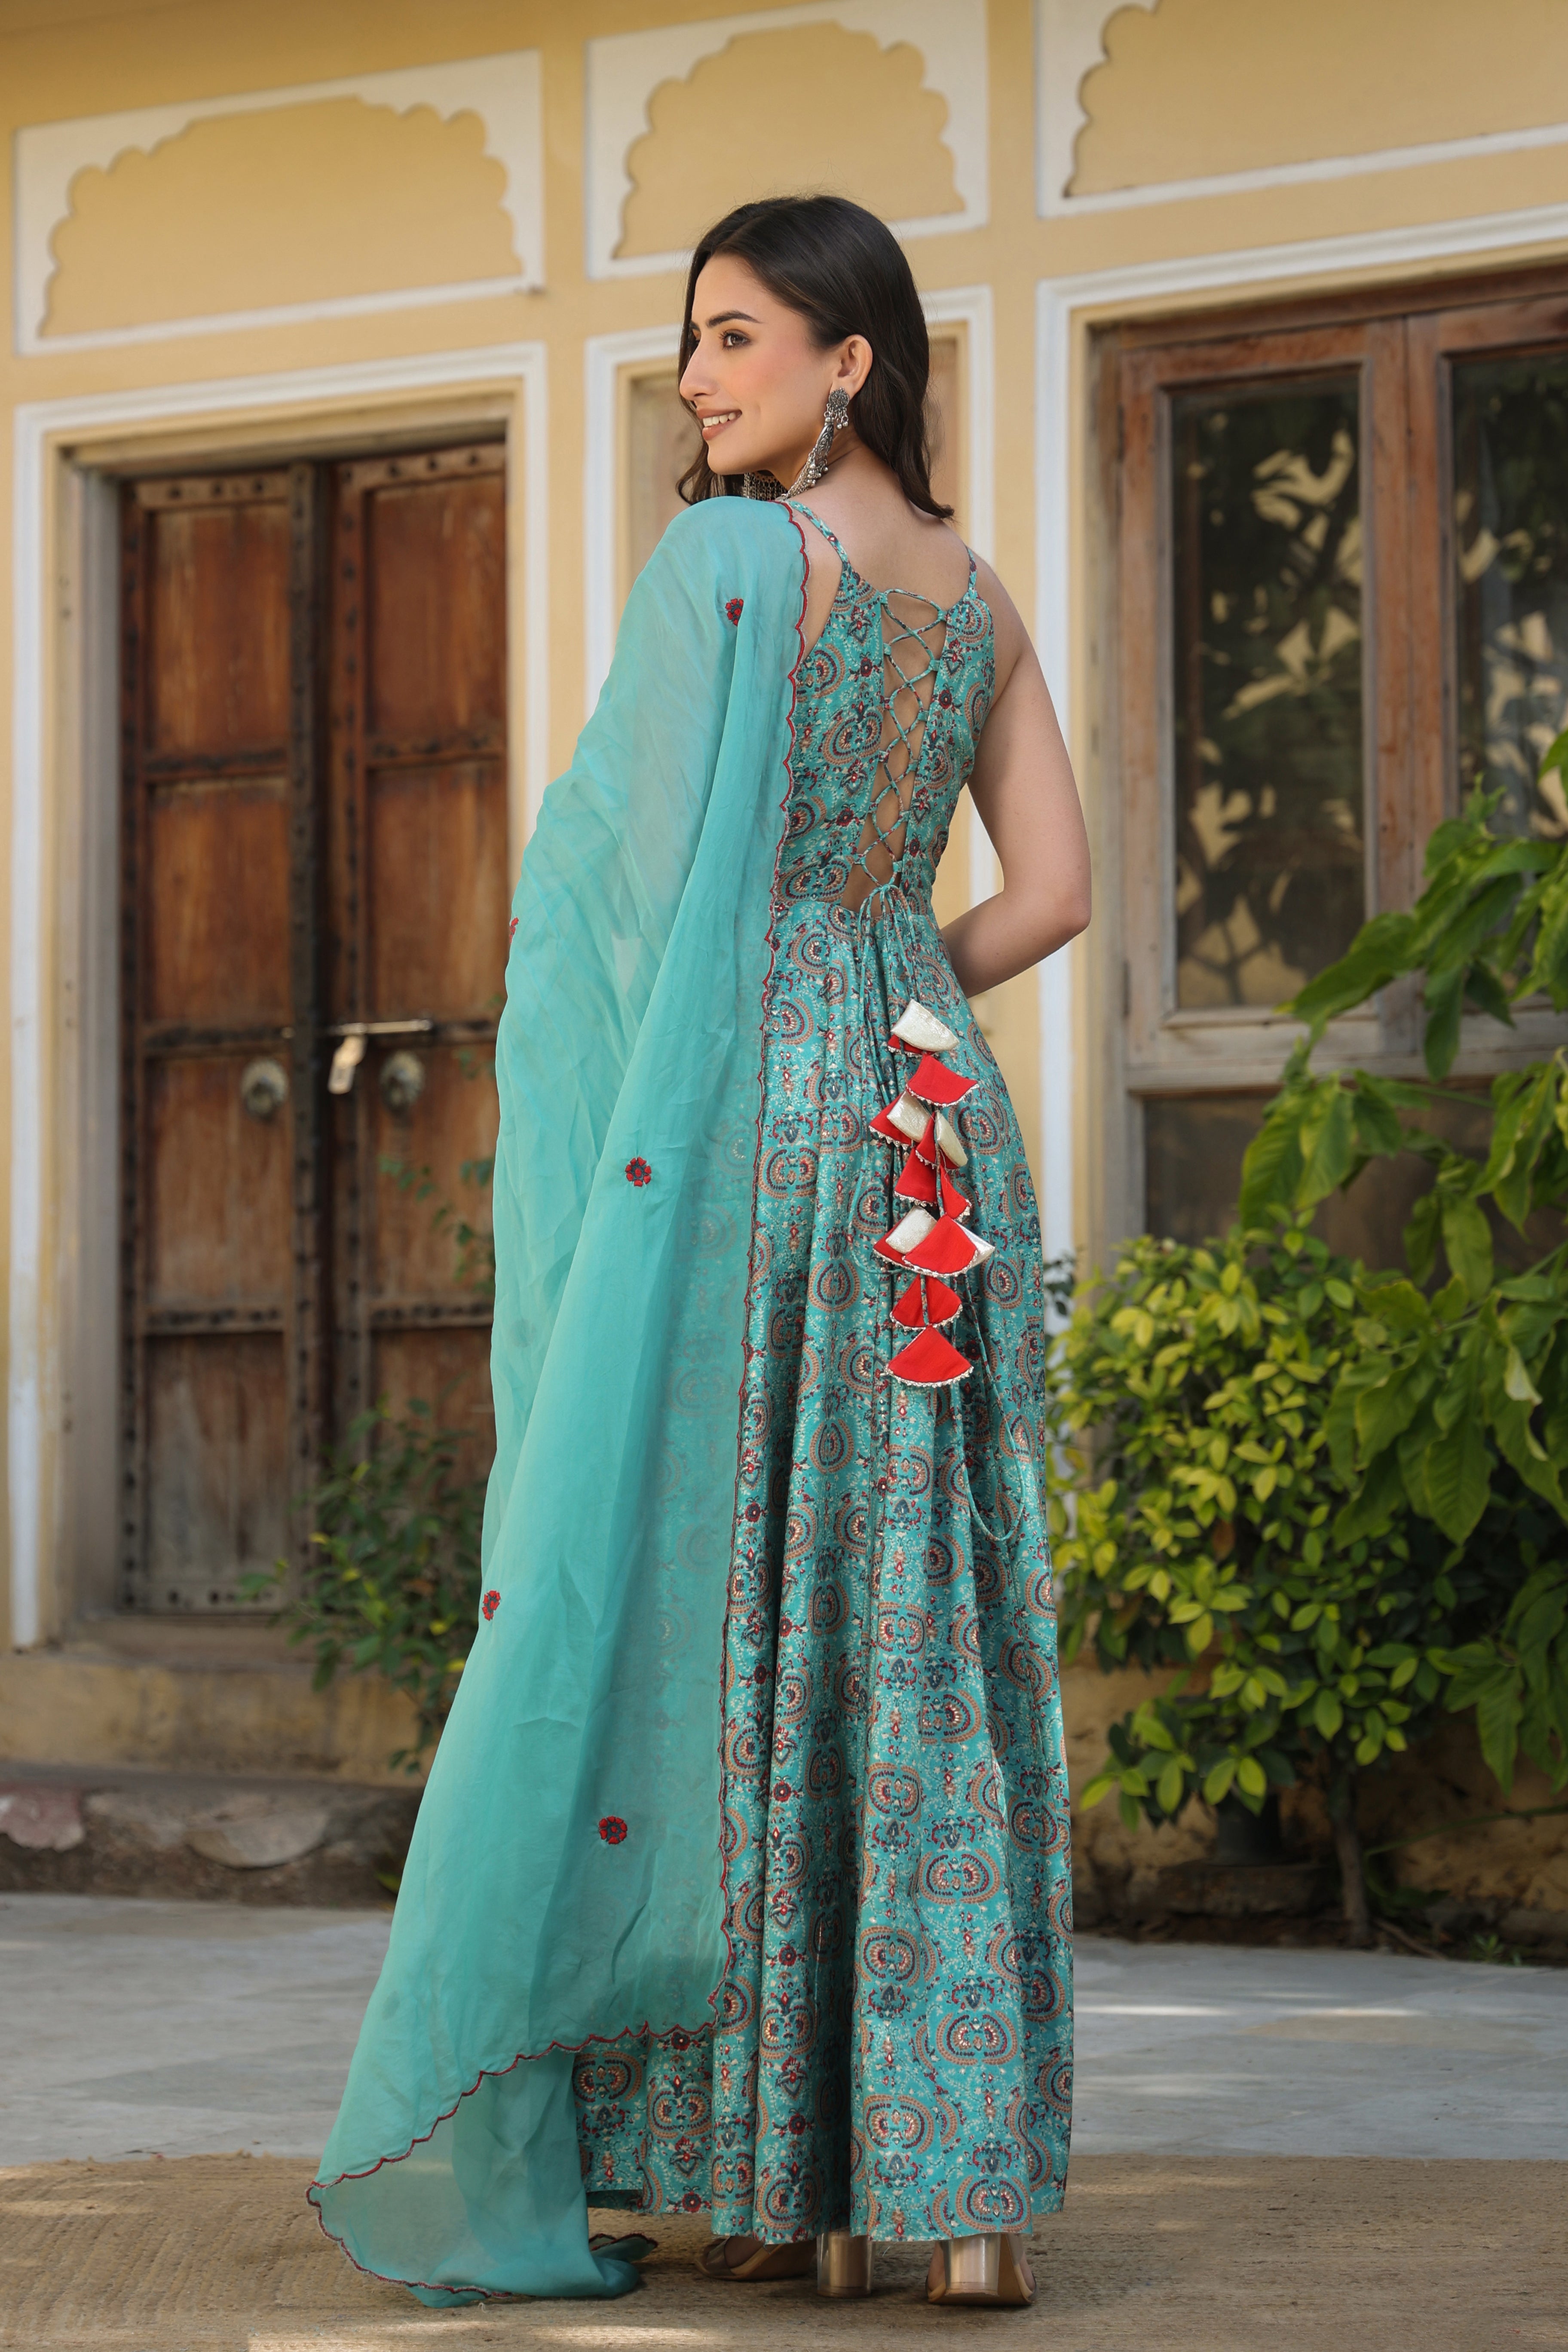 Raashi Khanna in an Anarkali – South India Fashion